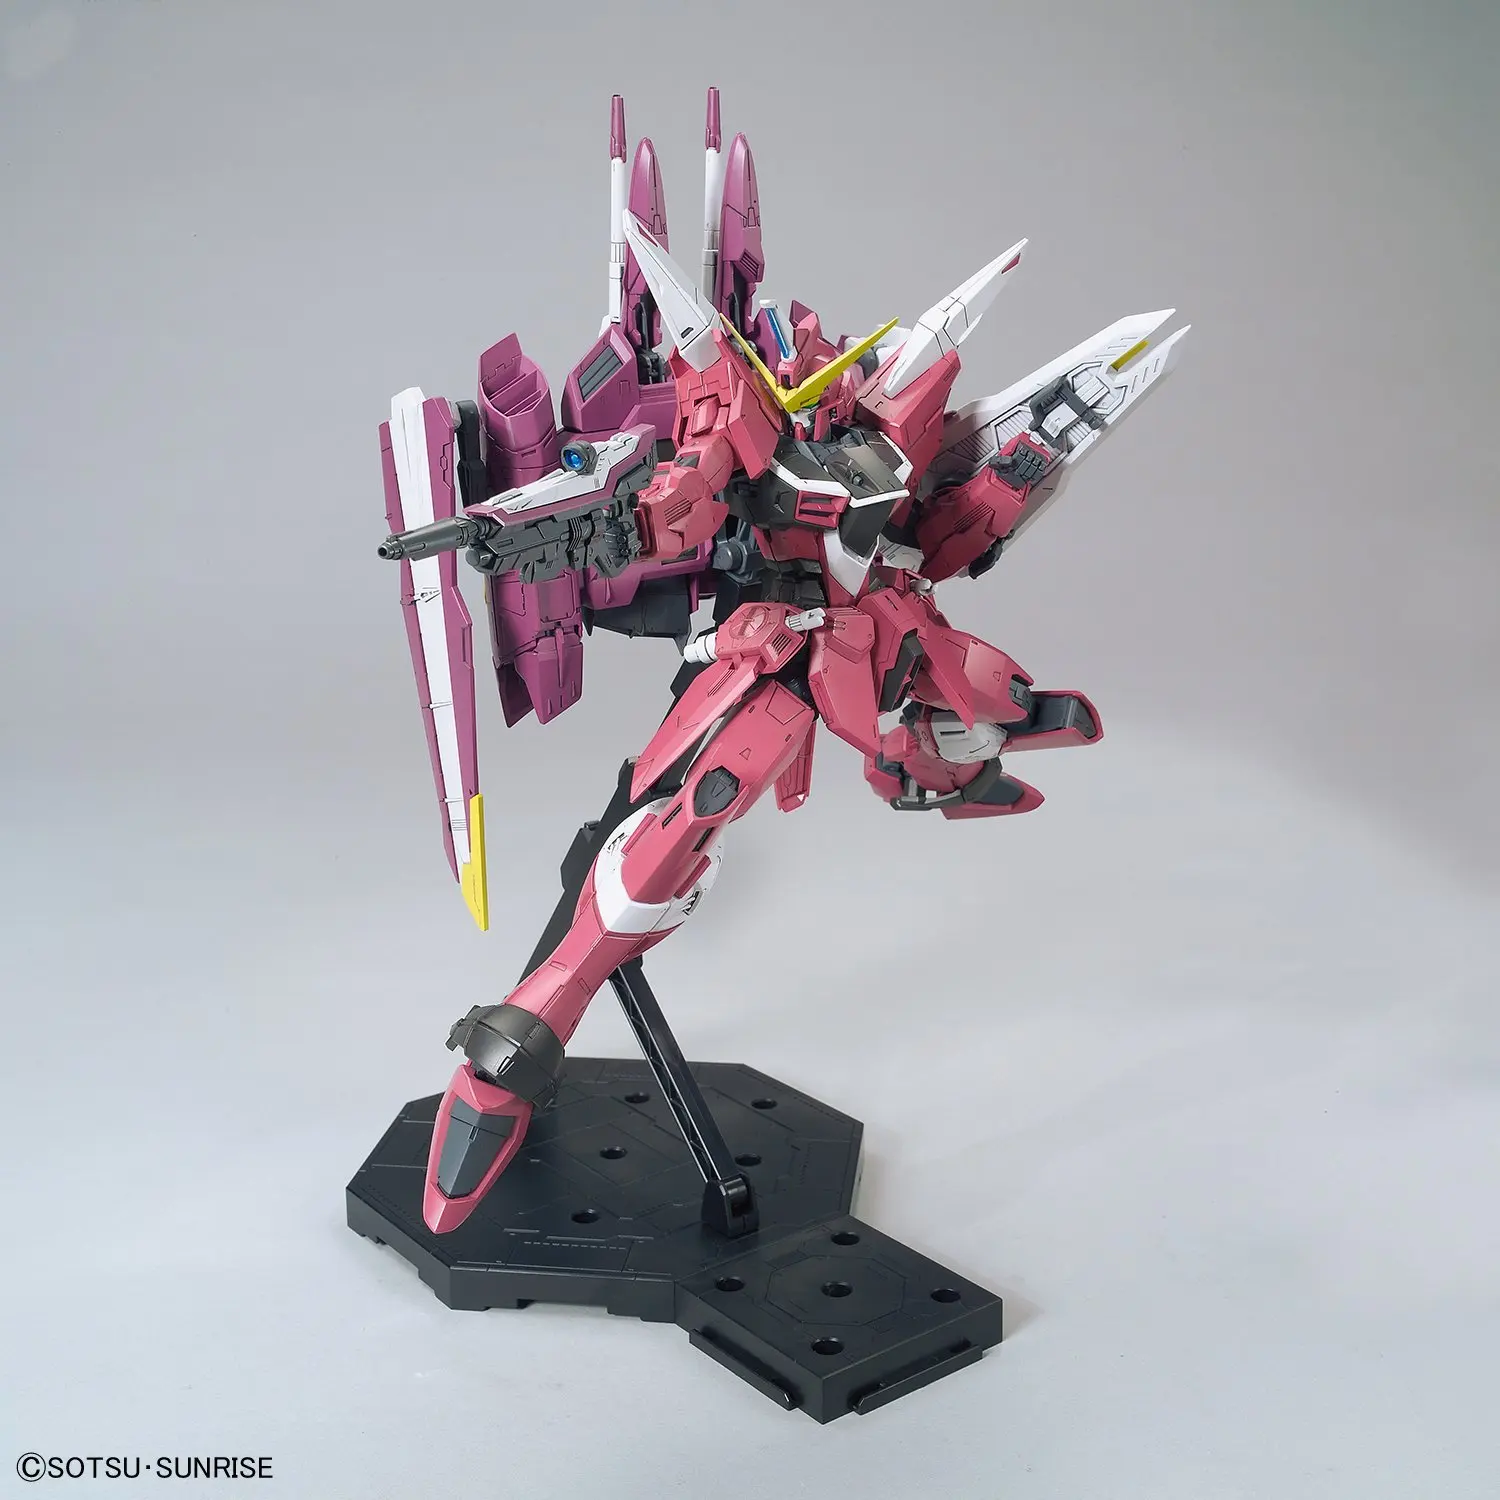 Bandai Gundam MG 1/100 ZGMF-X09A справедливости мобильный костюм сборки модель Наборы фигурки пластмассовые игрушечные модели